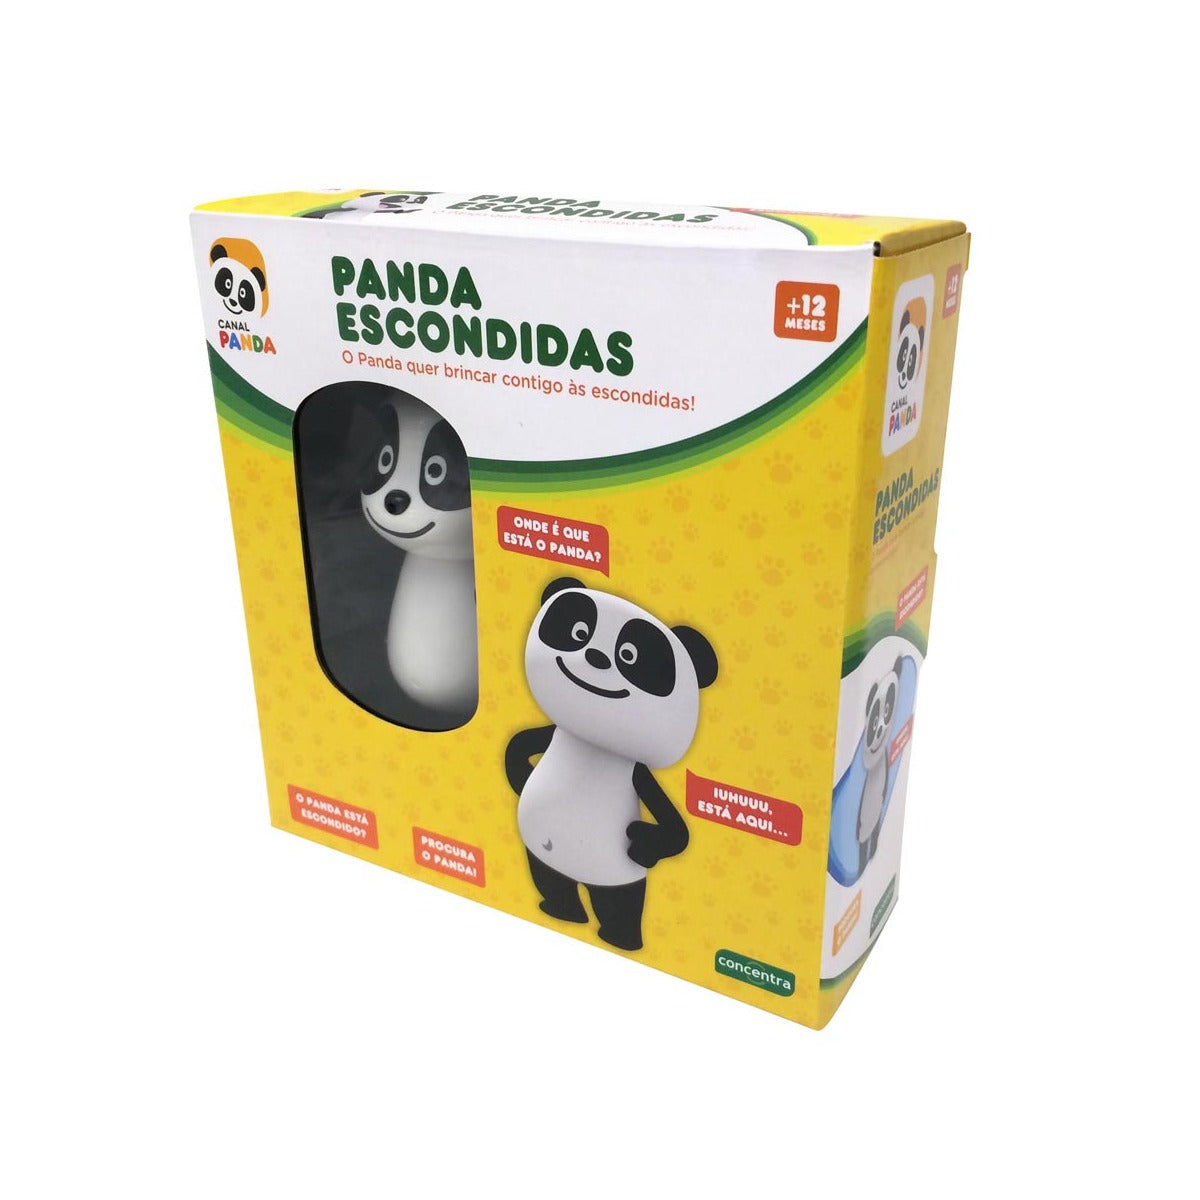 Panda Escondiditas - Concentra